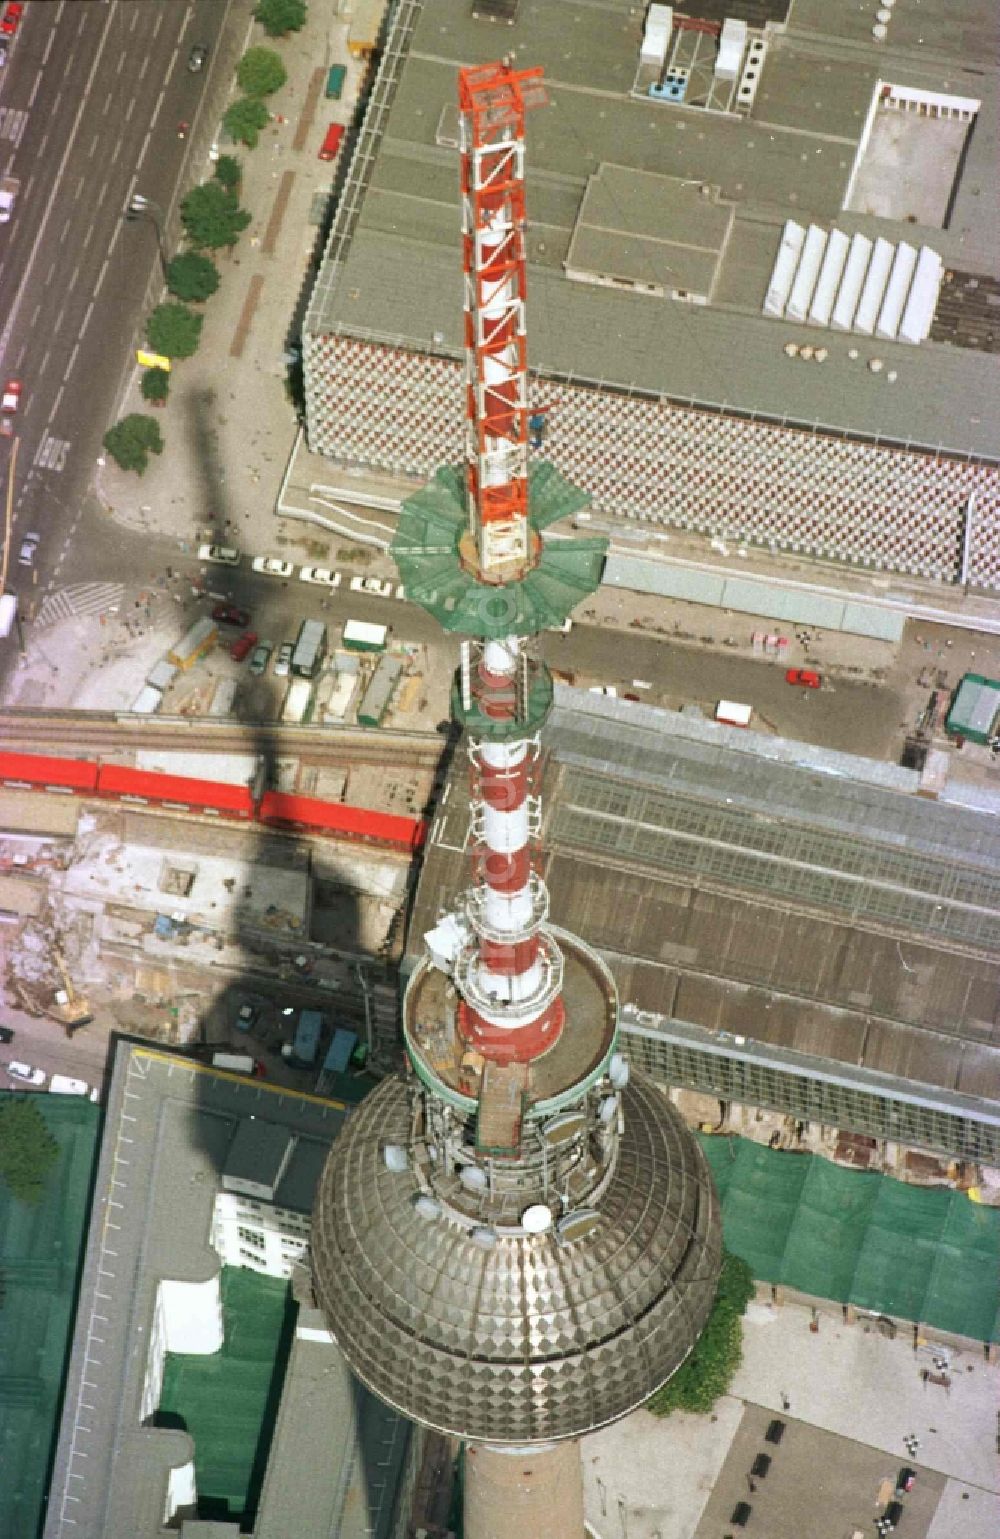 Berlin von oben - Erweiterung der Antennenspitze über der Kugel des Fernsehturm in Berlin, Deutschland